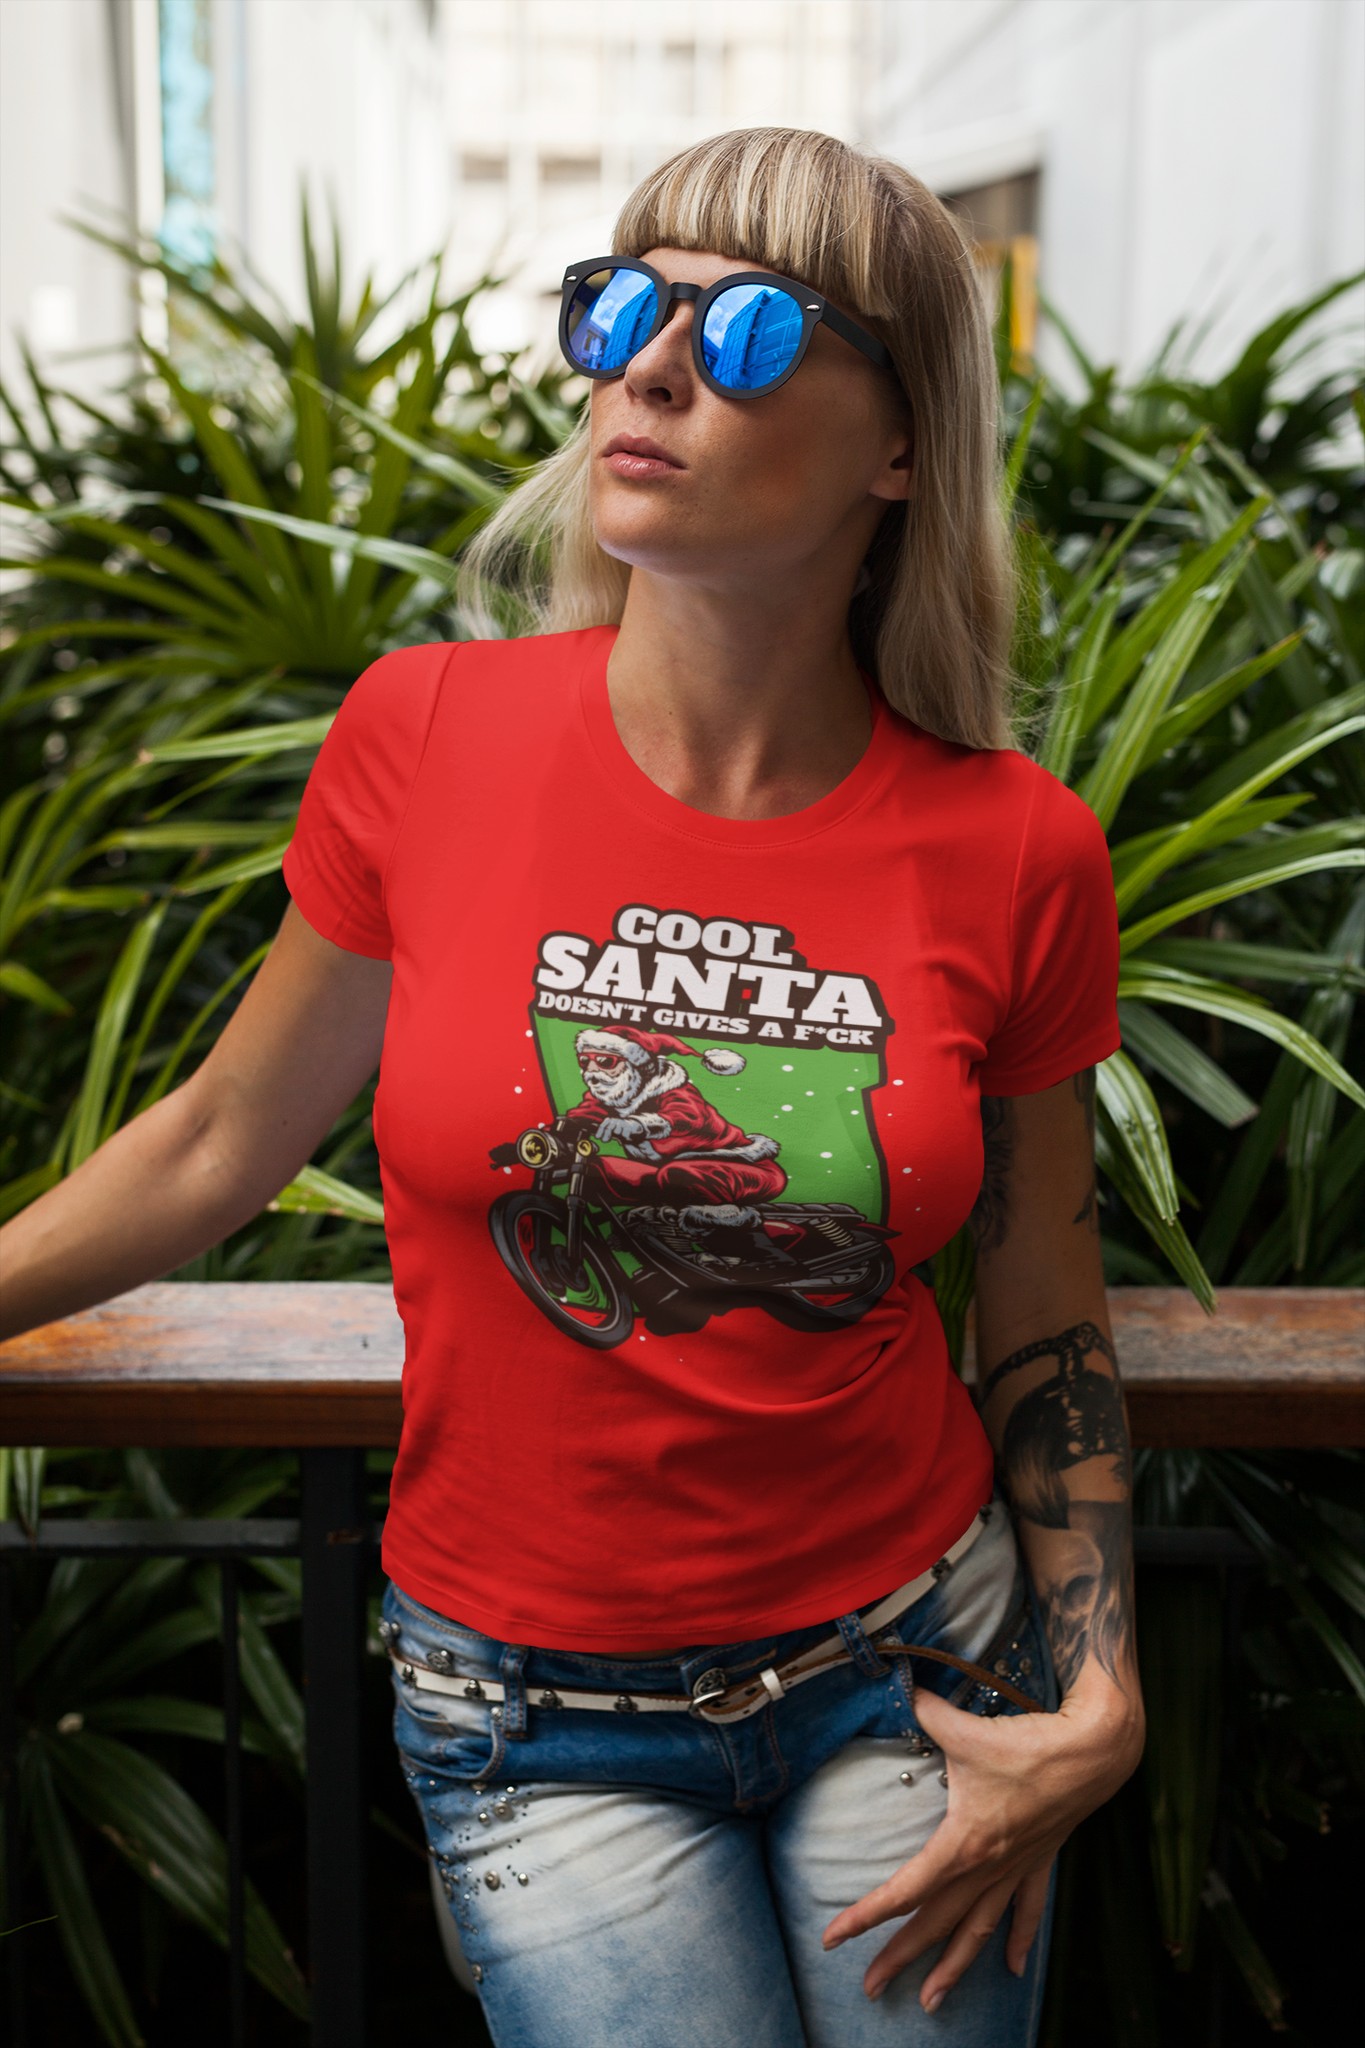 Cool Santa Doesn't Gives A F*ck  - T-shirt Dam/Women Ladyfit , Jul T-Shirts Dam, Jul Tischor i flera färger